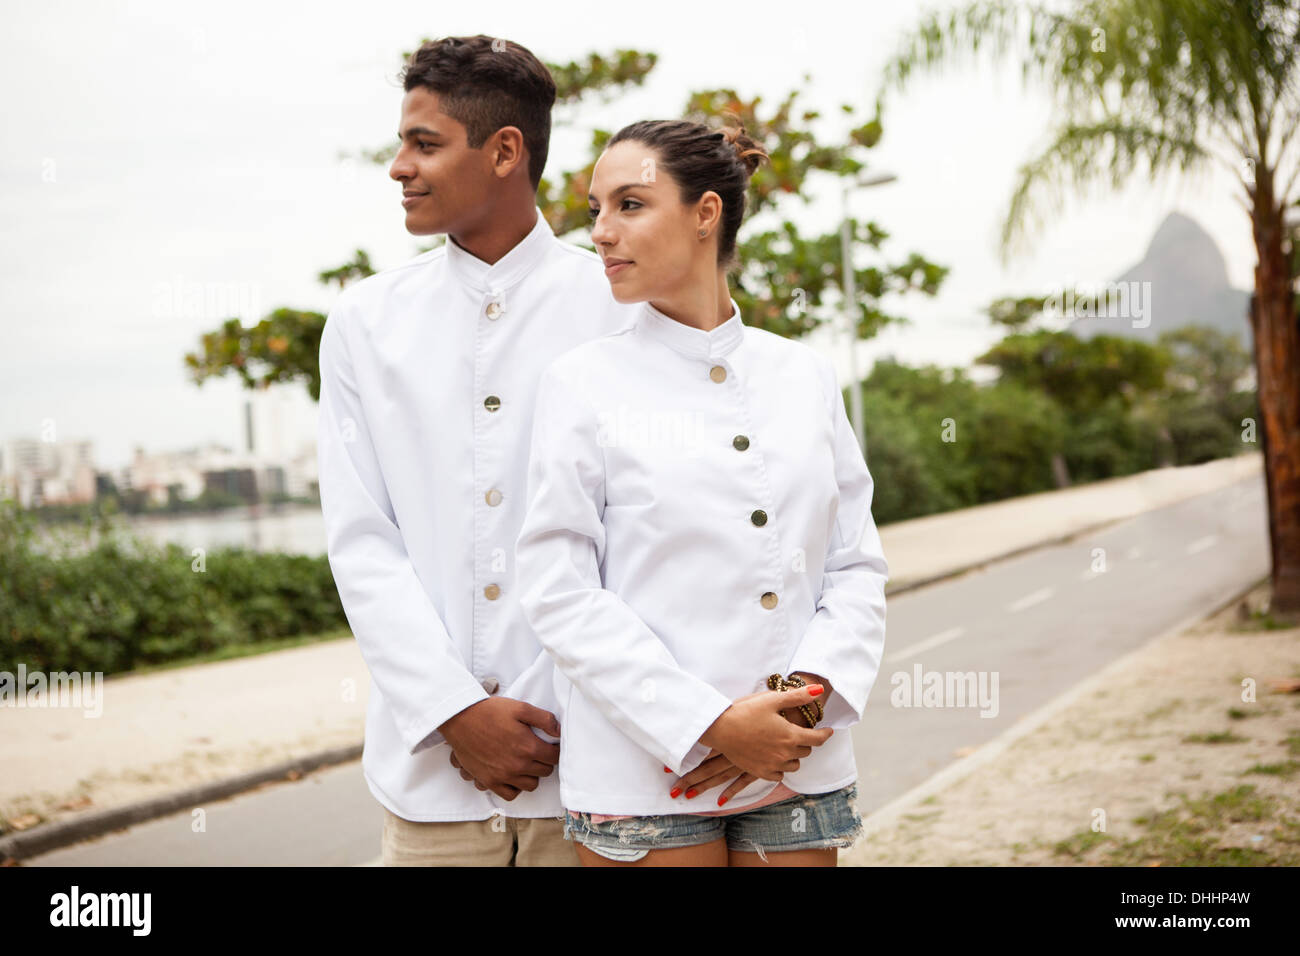 Portrait of young male and female service staff, Rio De Janiero Stock Photo